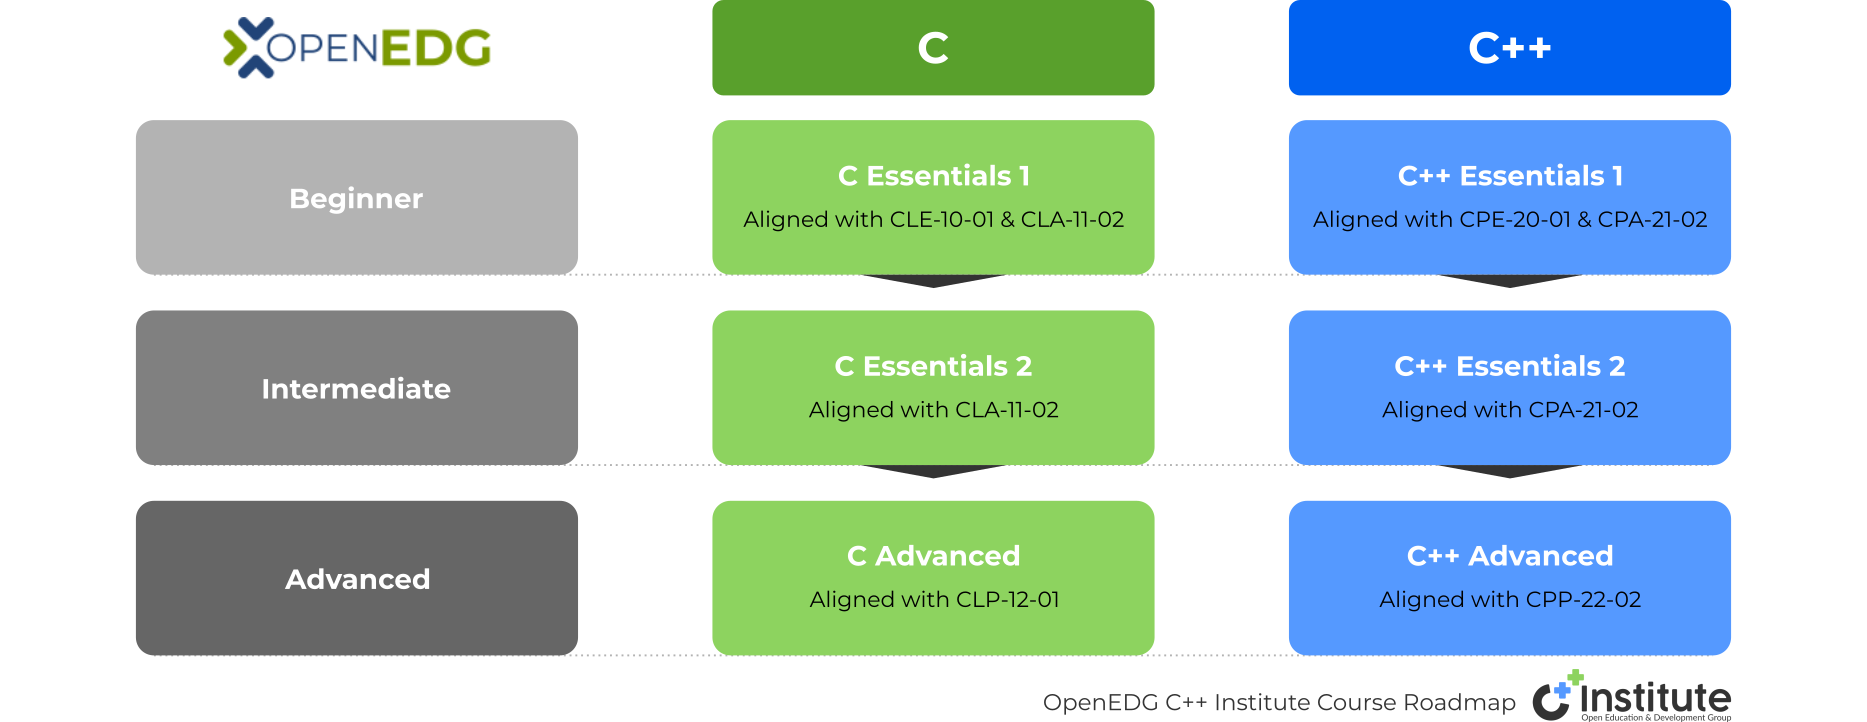 OpenEDG C++ Institute Course Roadmap